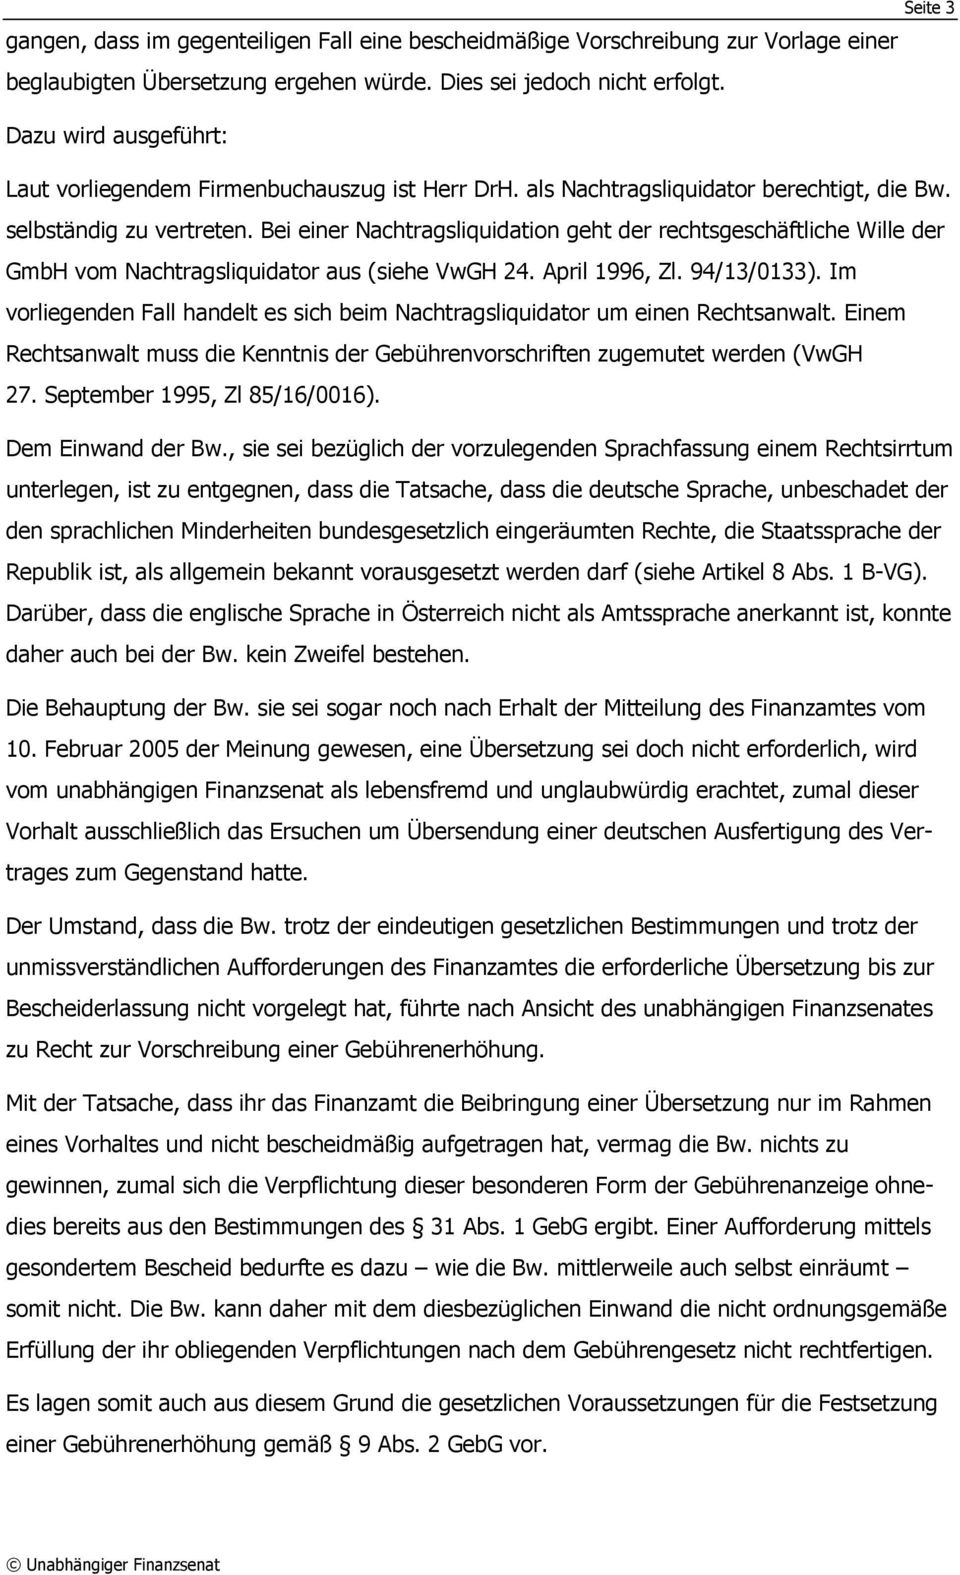 Bei einer Nachtragsliquidation geht der rechtsgeschäftliche Wille der GmbH vom Nachtragsliquidator aus (siehe VwGH 24. April 1996, Zl. 94/13/0133).